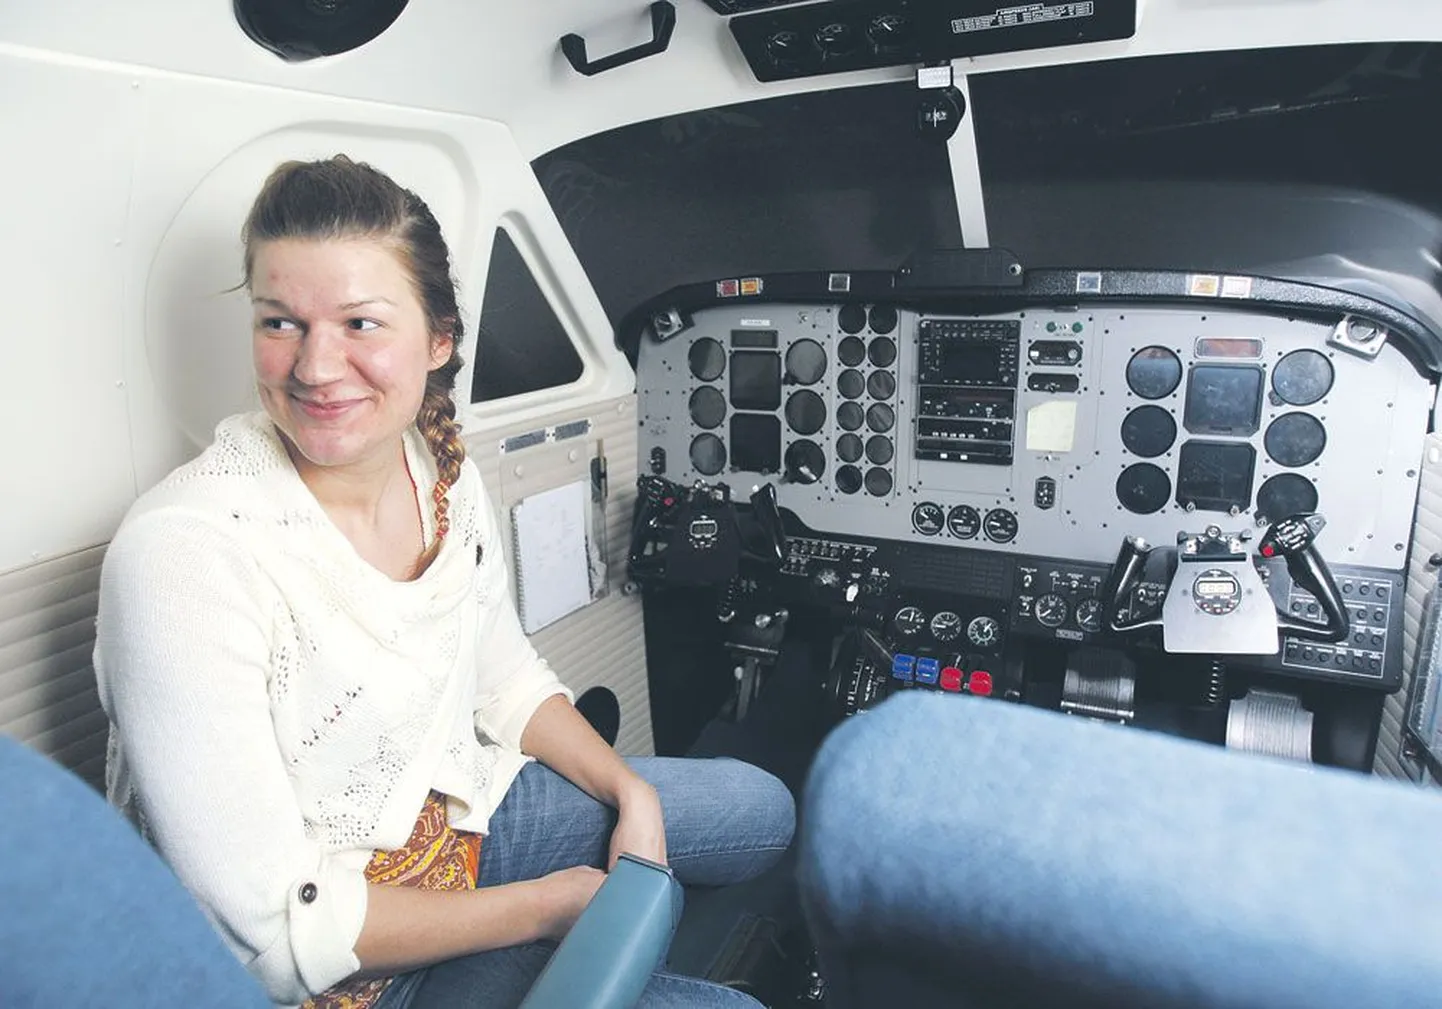 Рабочий день начался для Мари-Лийс Саар в кабине пилота. На снимке всего лишь симулятор, на котором тренируются будущие пилоты.